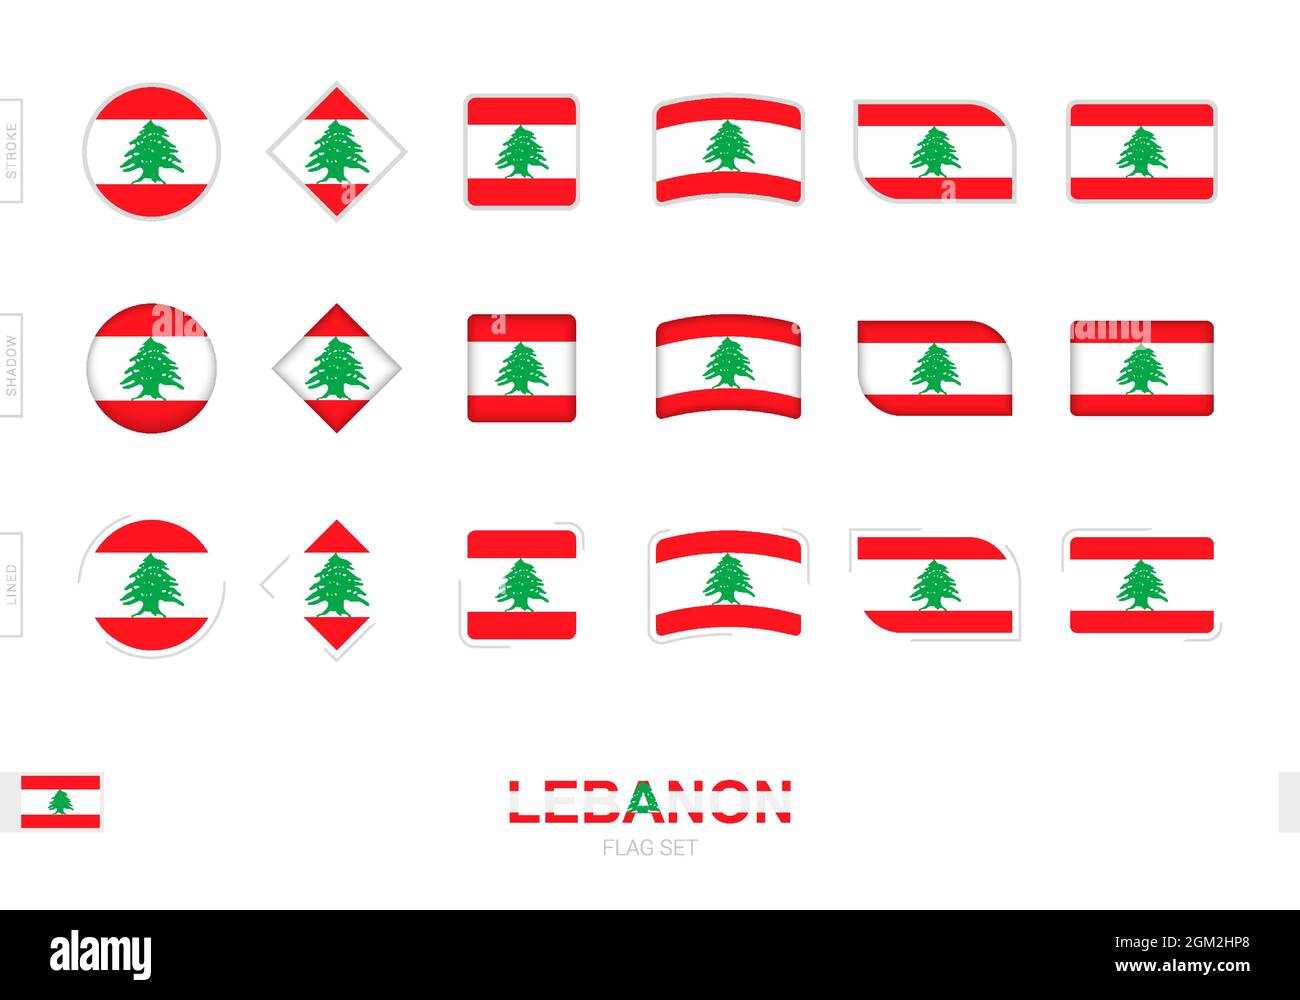 Drapeau libanais, drapeaux simples du Liban avec trois effets différents. Illustration vectorielle. Illustration de Vecteur